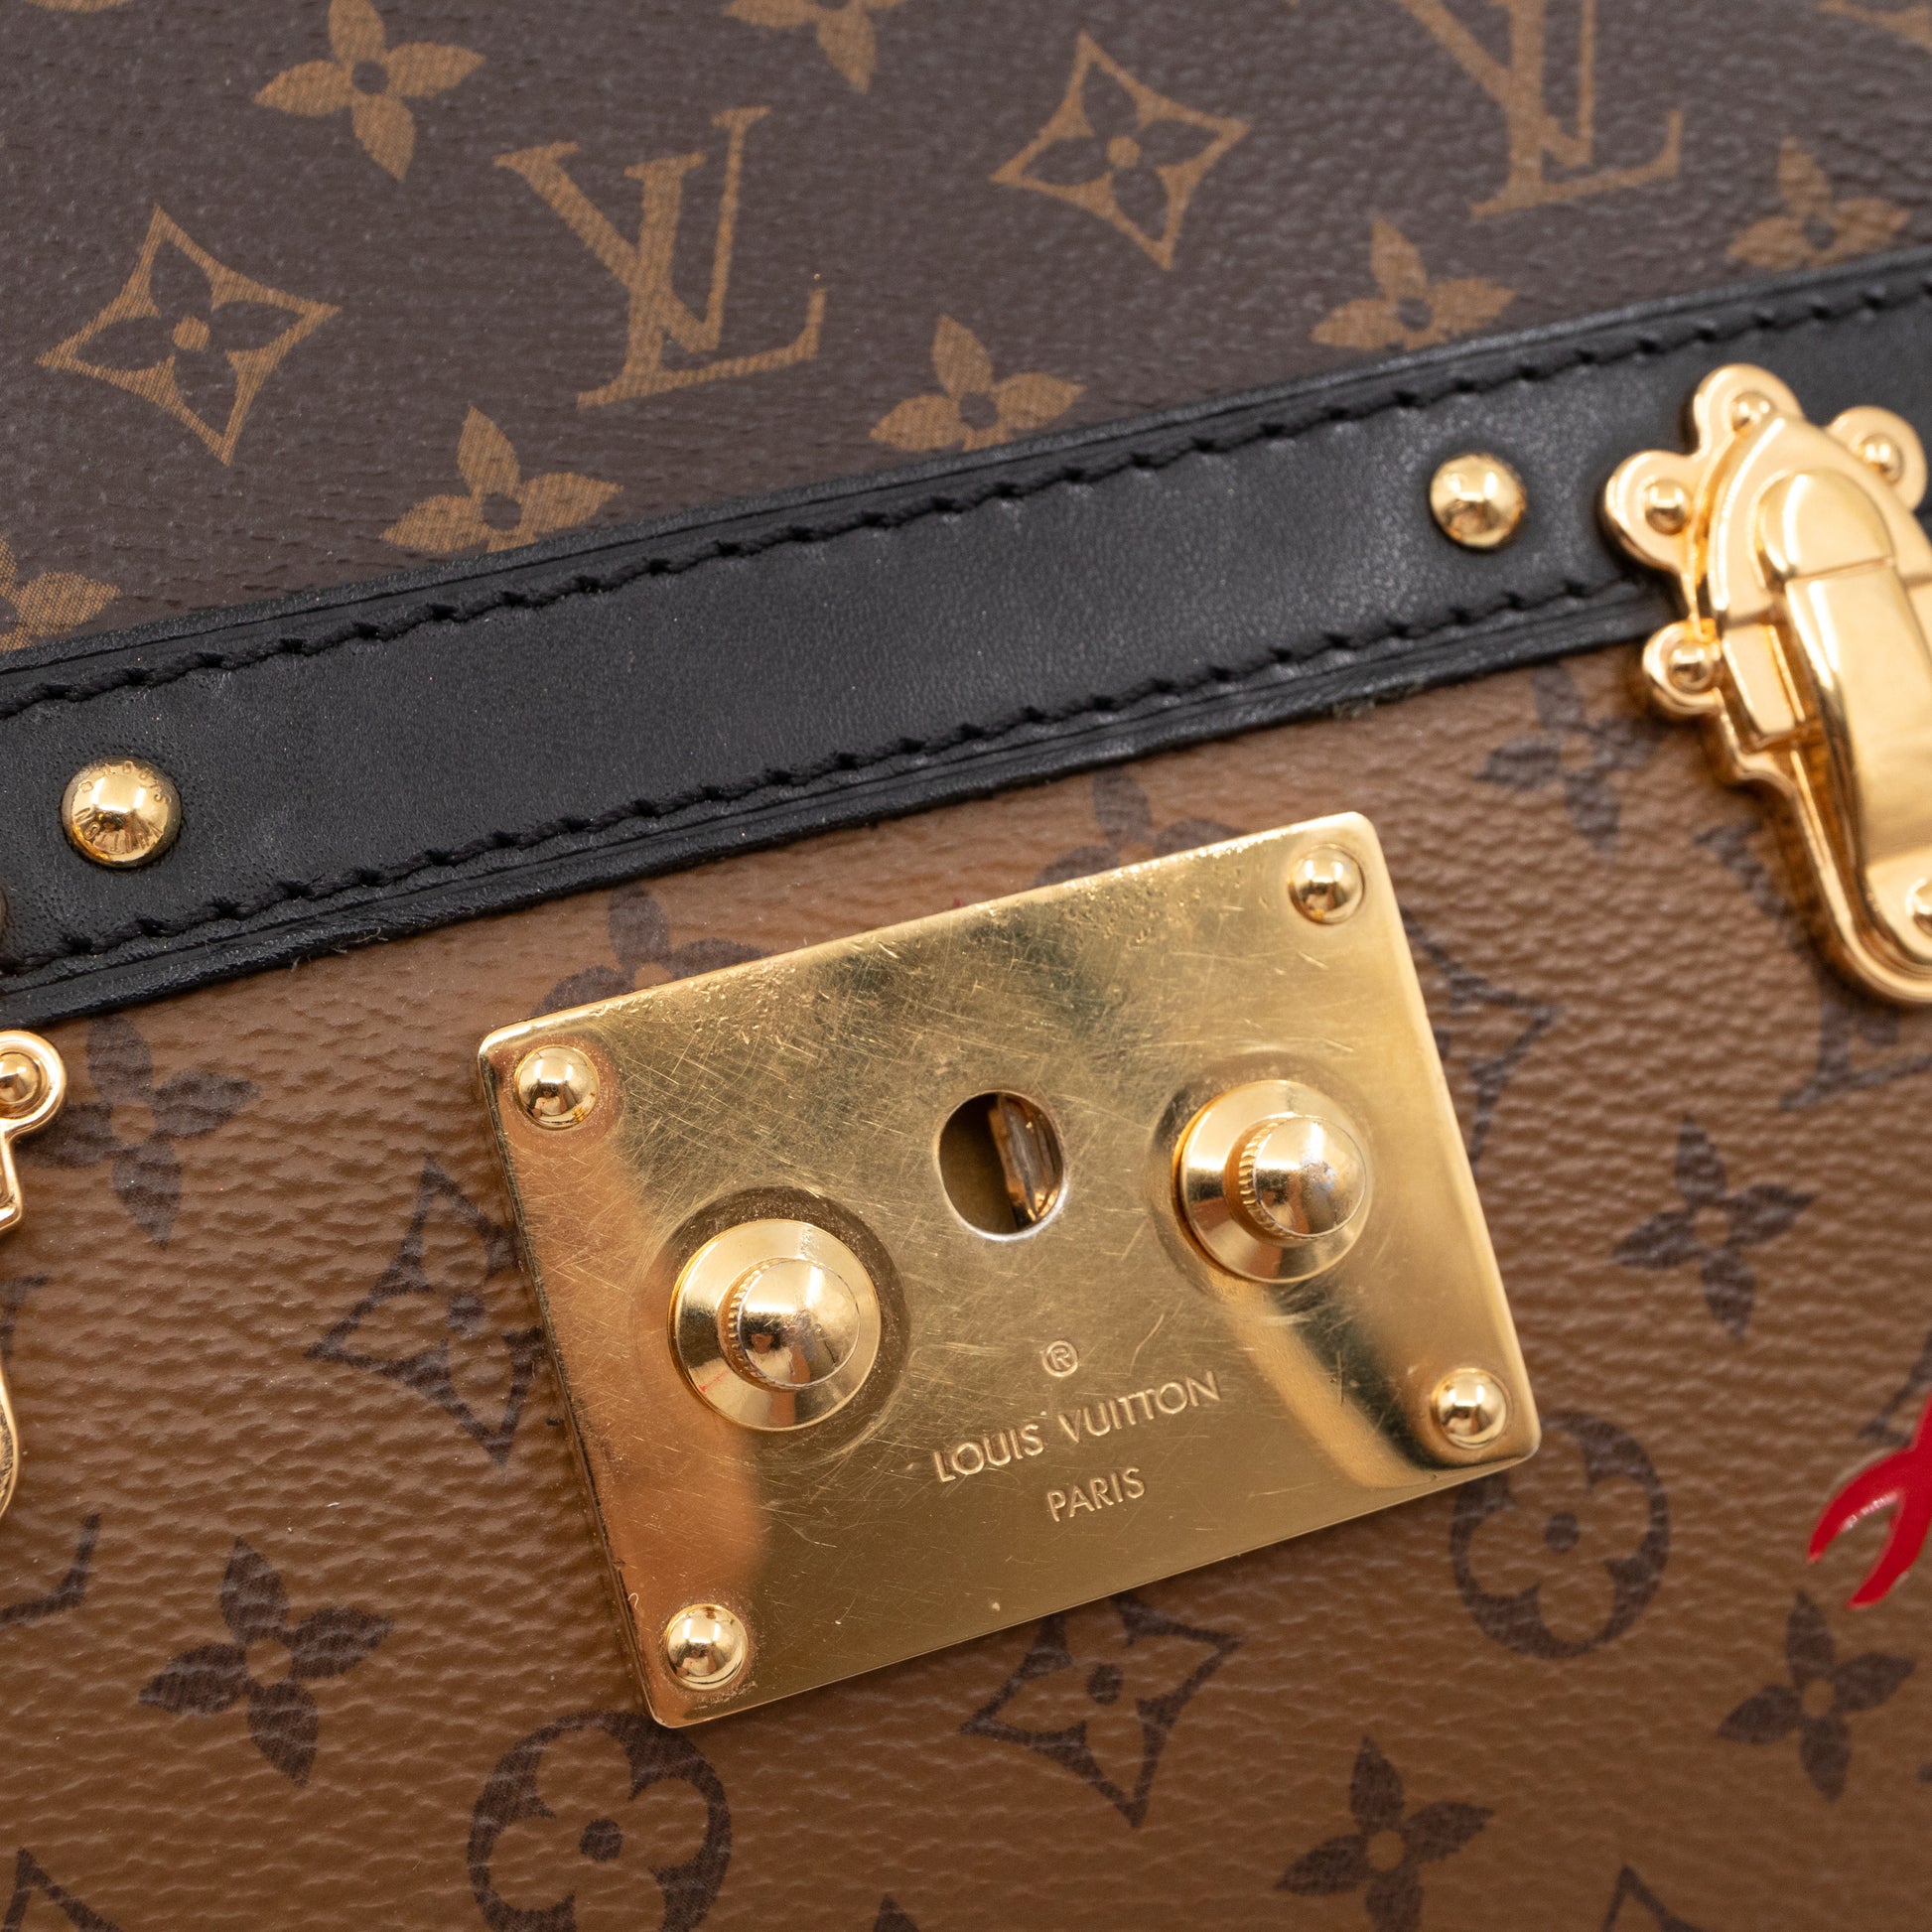 Authentic Louis Vuitton Reverse Monogram Petite Malle Trunk Clutch Handbag